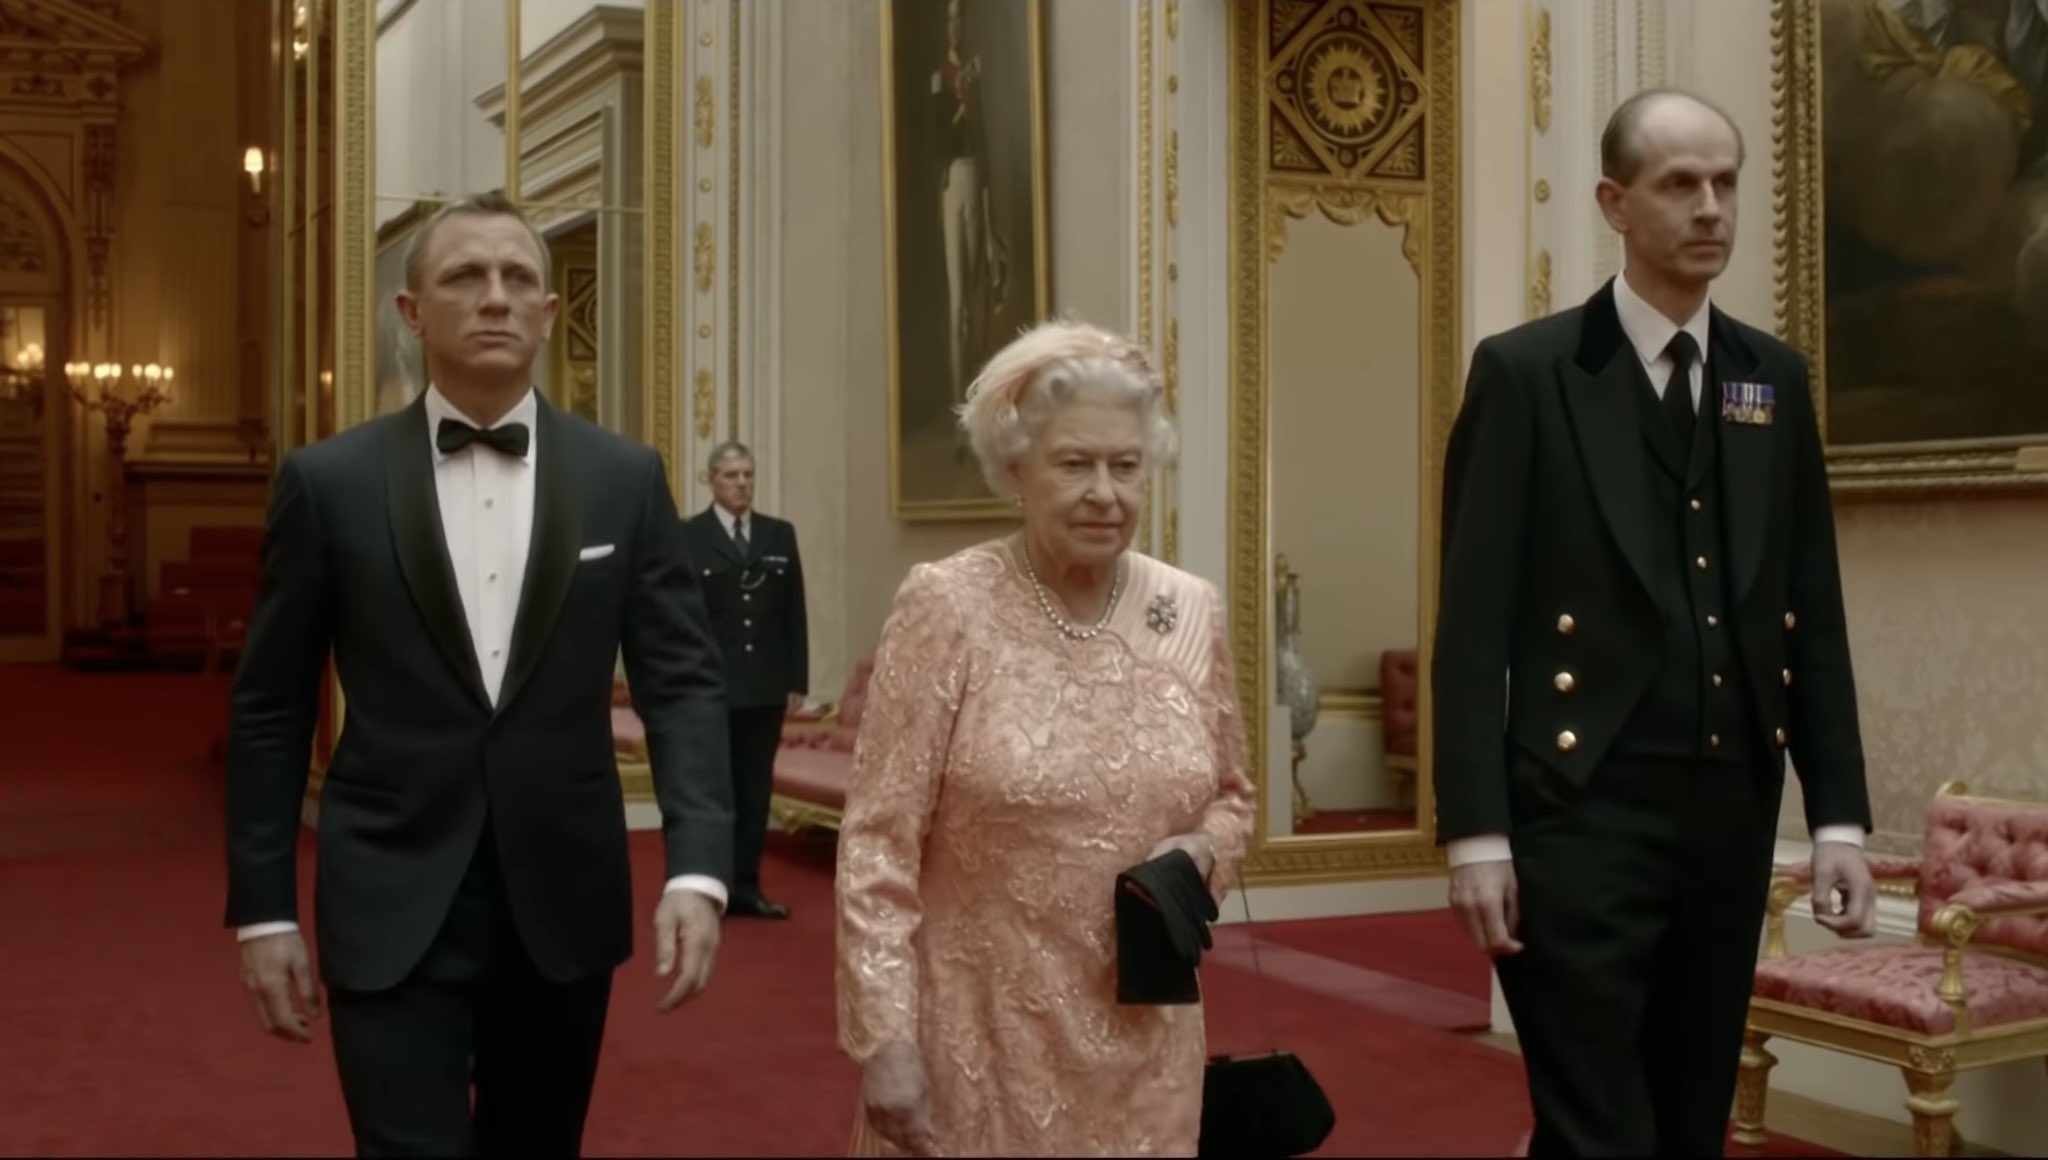 Vagabond 英国の象徴である女王陛下にダメ元で オリンピックの開会式に007と共演してくれませんか と無茶振りかました結果 速攻で了承 なんならセリフも言わせろと要求し ノリノリで007と共演した後 とても愉快でした と言い残して王室に帰って